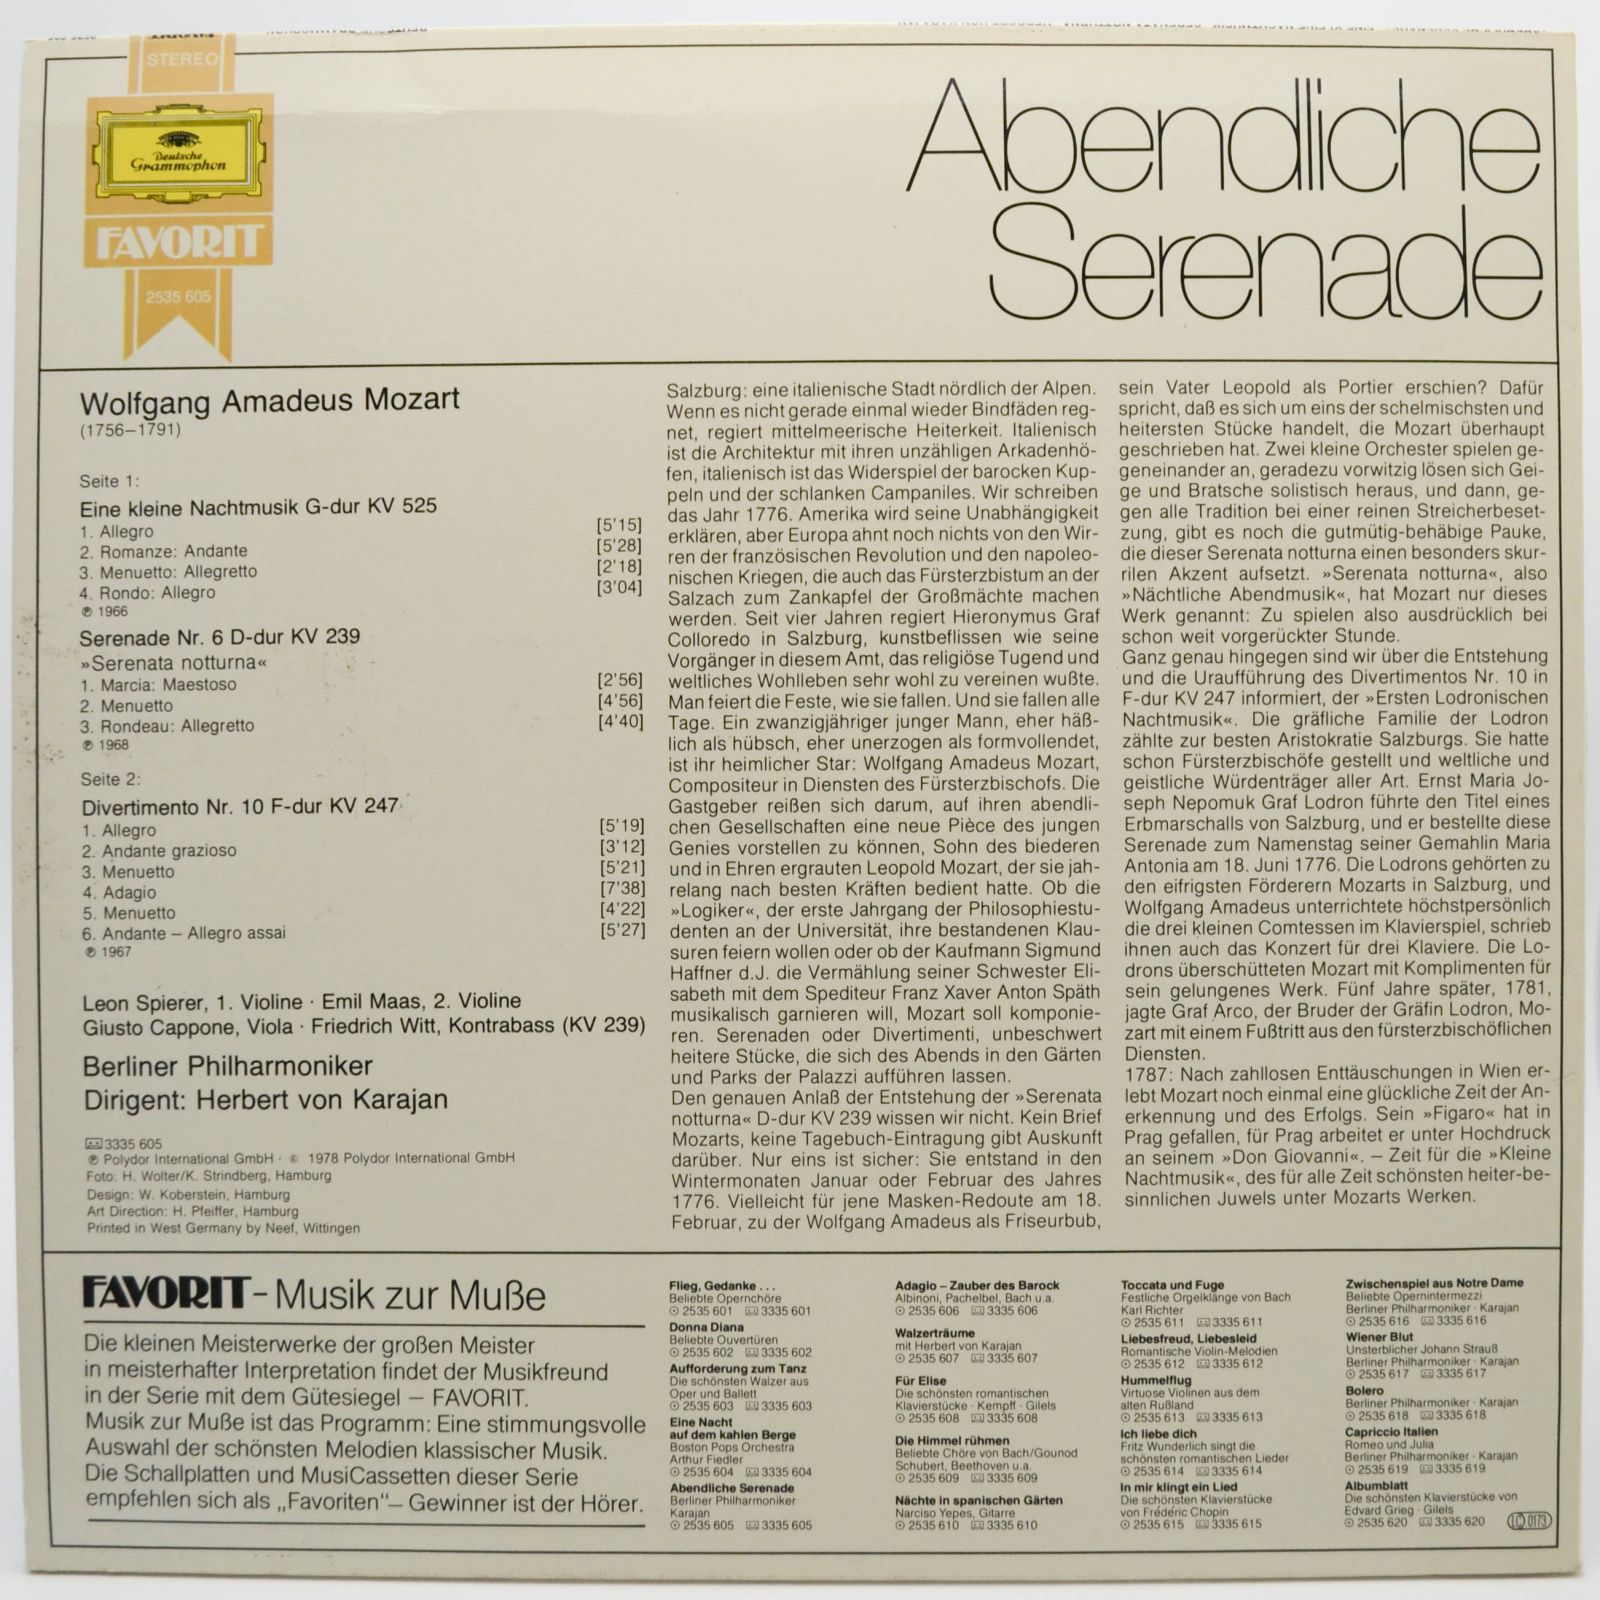 Wolfgang Amadeus Mozart, Berliner Philharmoniker, Karajan — Abendliche Serenade - Eine Kleine Nachtmusik - Serenata Notturna, 1978